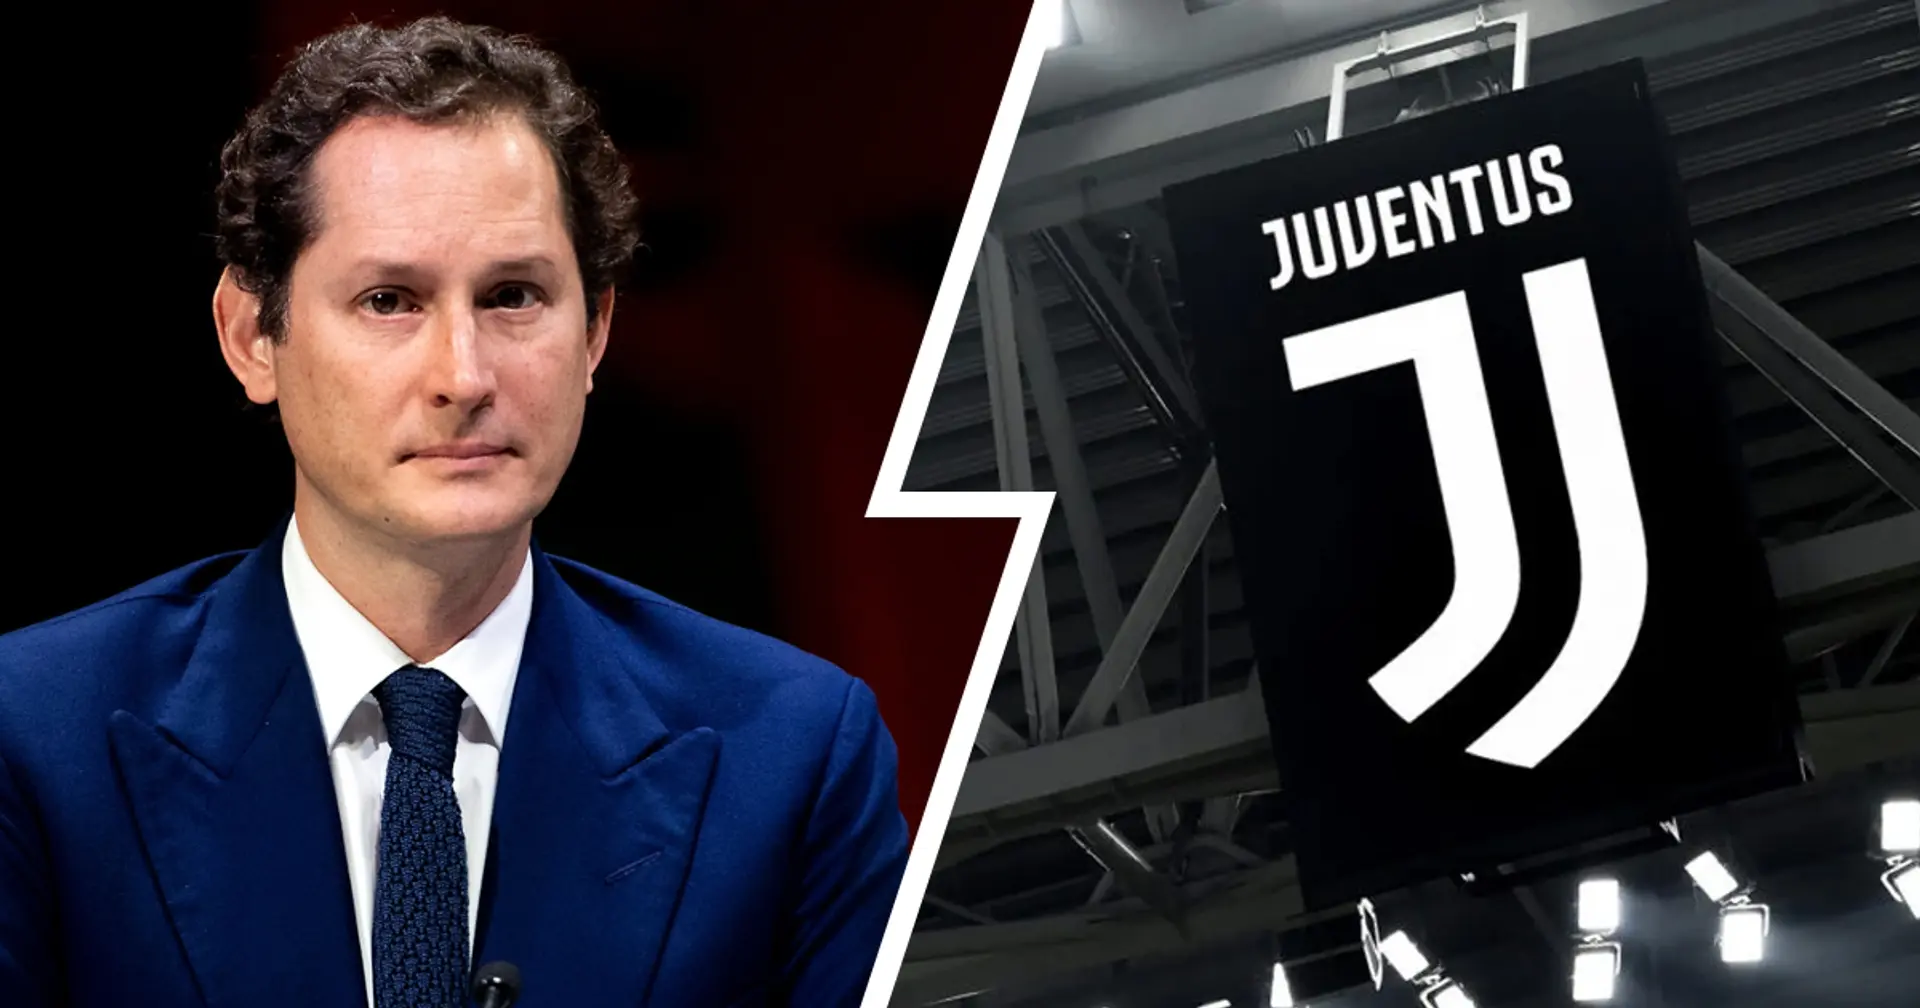 Svelate le due date fondamentali per stabilire il futuro della Juventus nella stagione 2022/23 